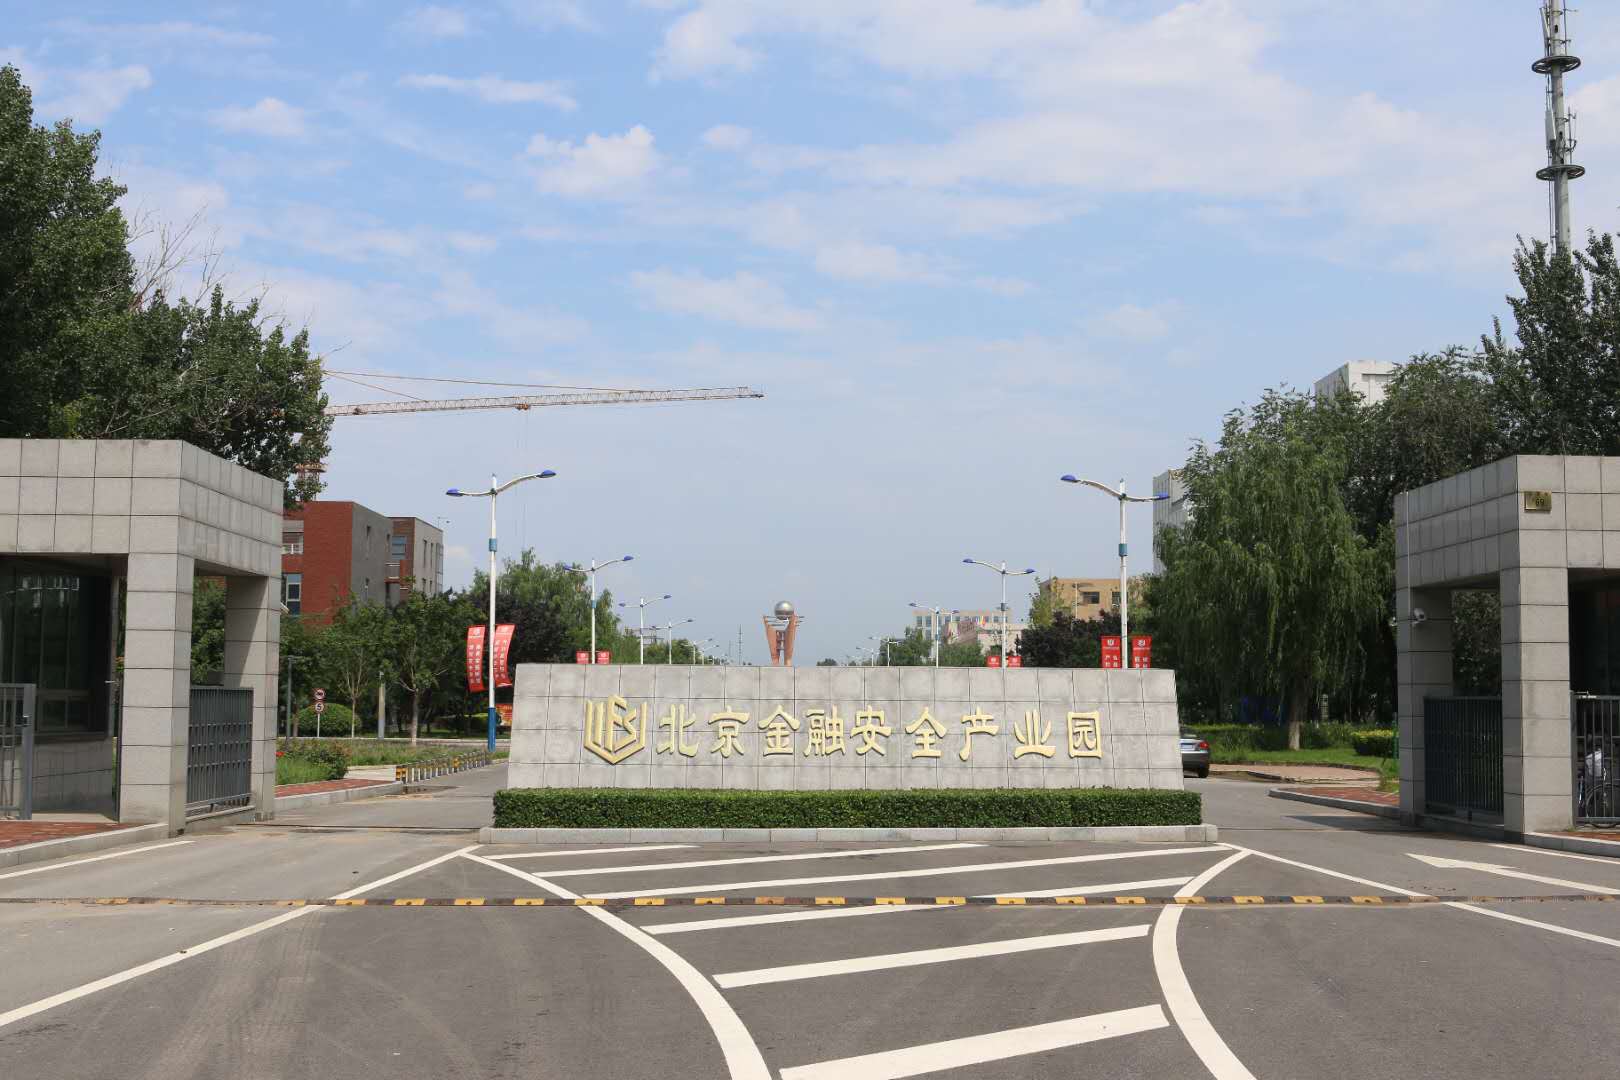  北京金融安全产业园有企业独栋办公楼，可出租出售，每栋楼面积2000-3000平方米，通水通电，交通便利，有政府政策优惠